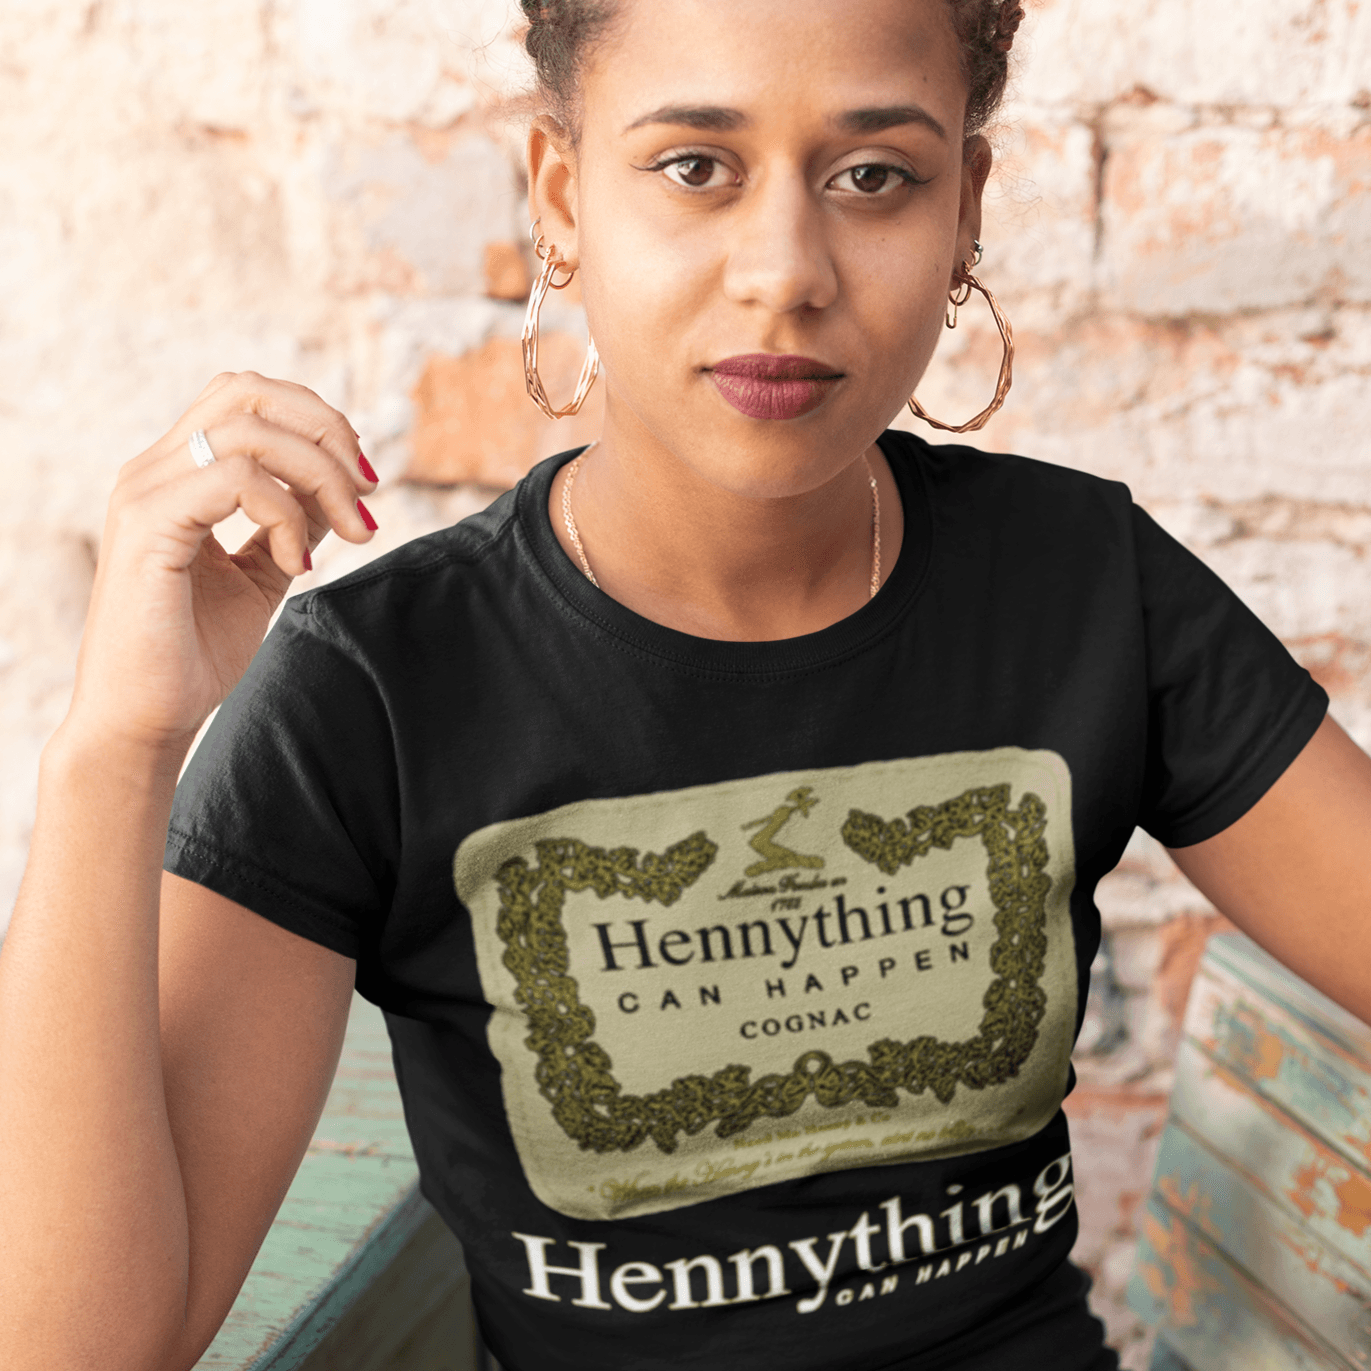 Hennesy T-shirt Hennything Can Happen Top Koala Unisex Tee - TopKoalaTee